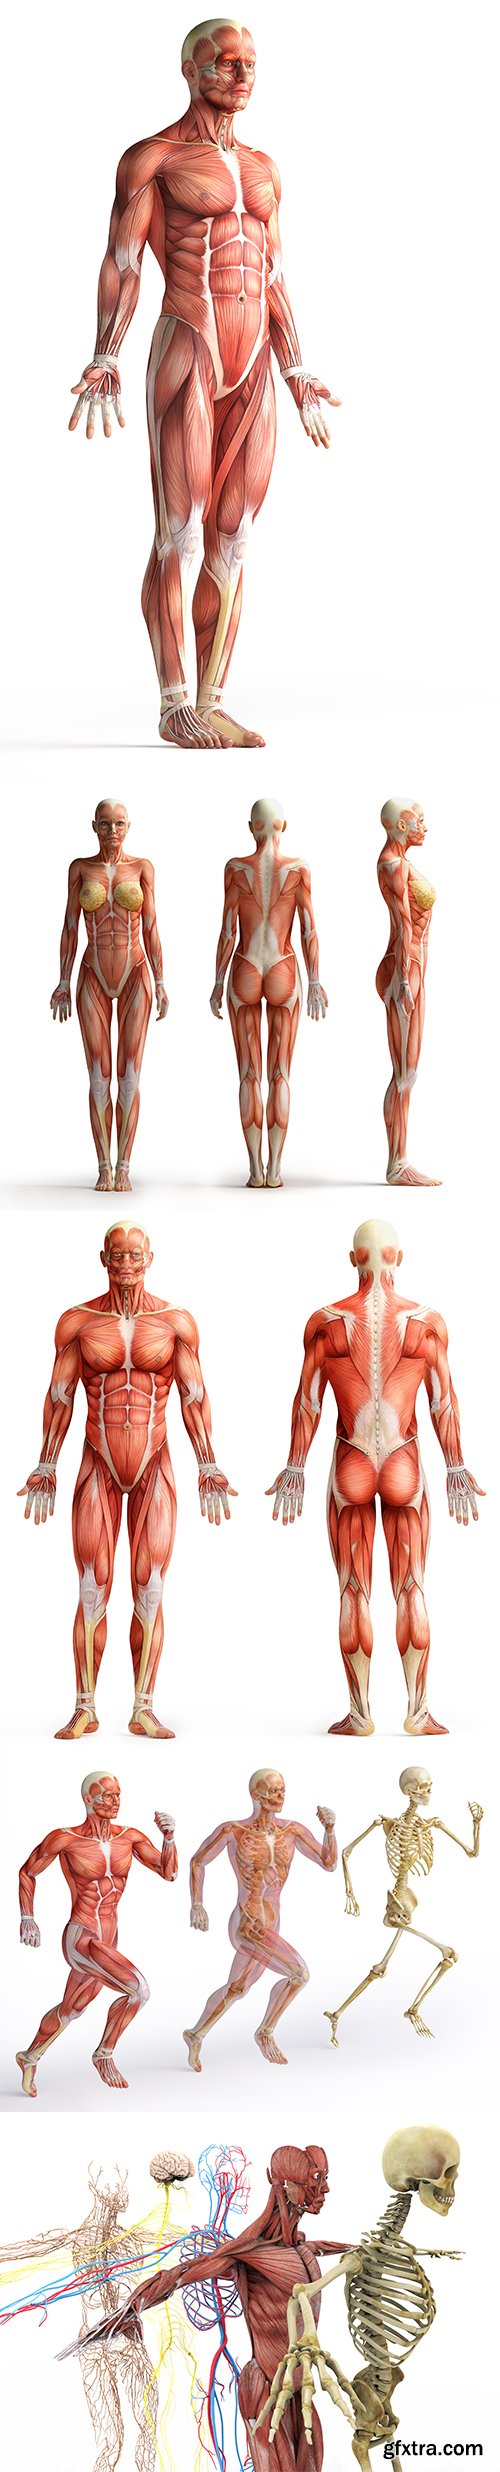 Anatomy Isolated - 8xJPGs